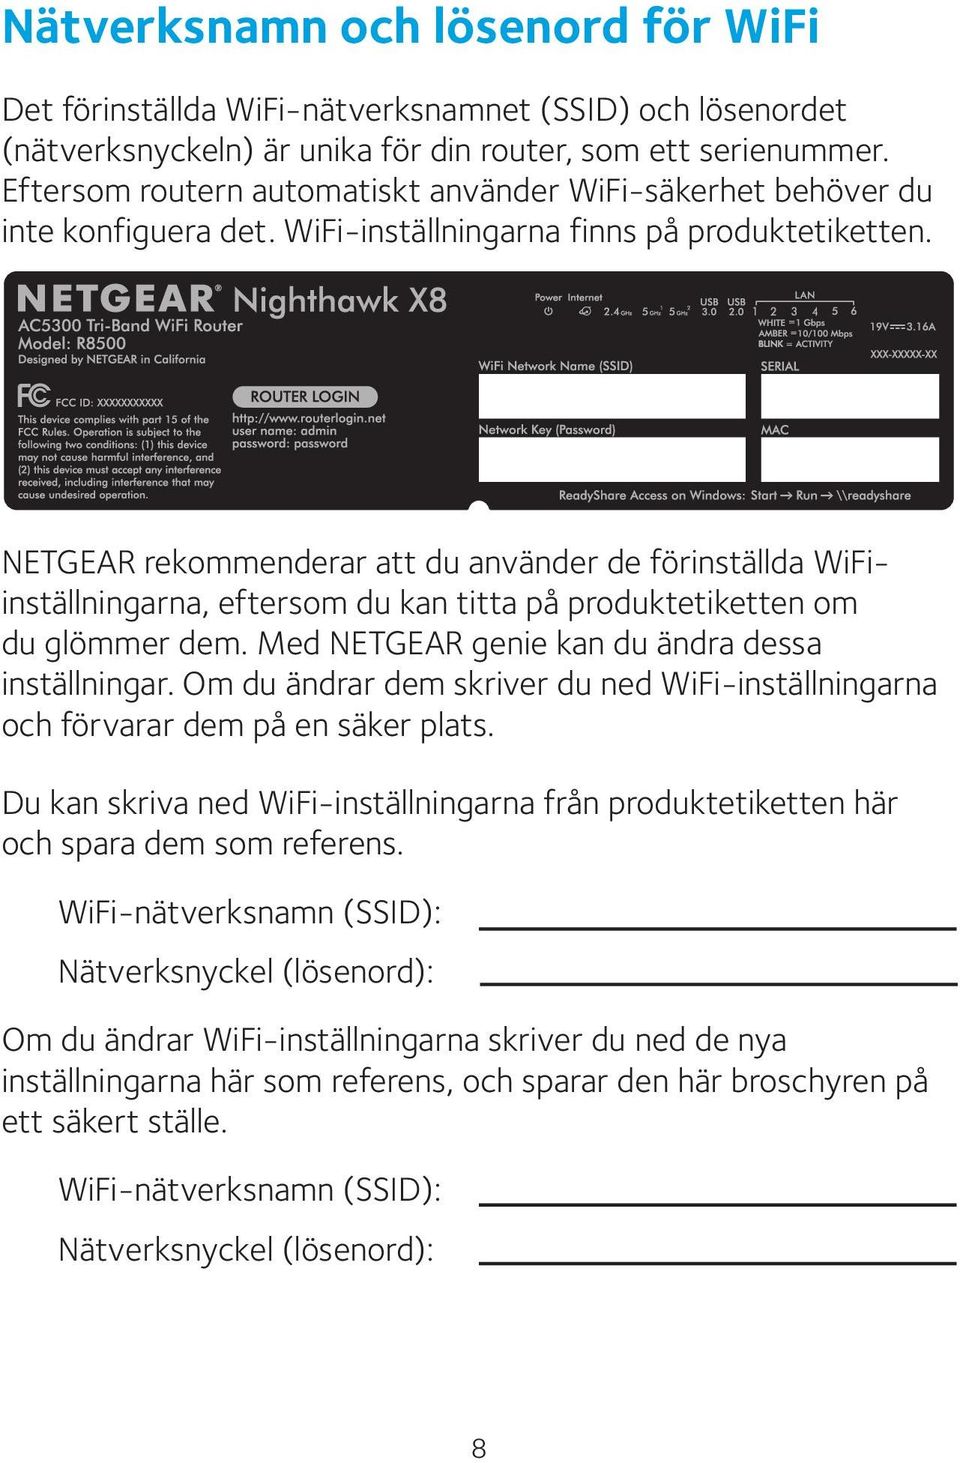 NETGEAR rekommenderar att du använder de förinställda WiFiinställningarna, eftersom du kan titta på produktetiketten om du glömmer dem. Med NETGEAR genie kan du ändra dessa inställningar.